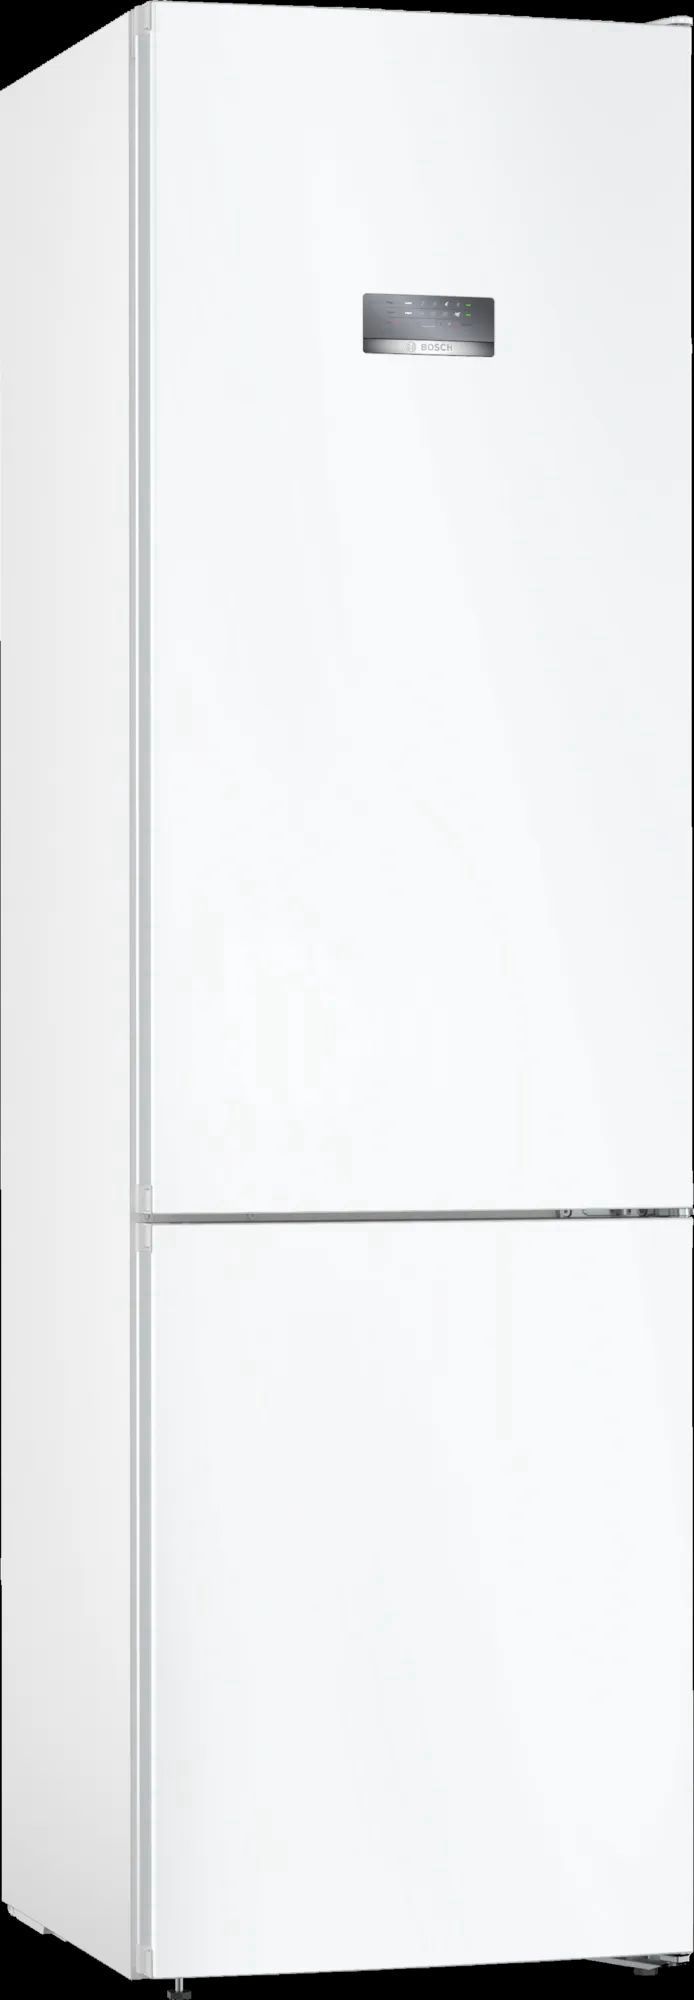 холодильник bosch kgn39vw25r, купить в Красноярске холодильник bosch kgn39vw25r,  купить в Красноярске дешево холодильник bosch kgn39vw25r, купить в Красноярске минимальной цене холодильник bosch kgn39vw25r